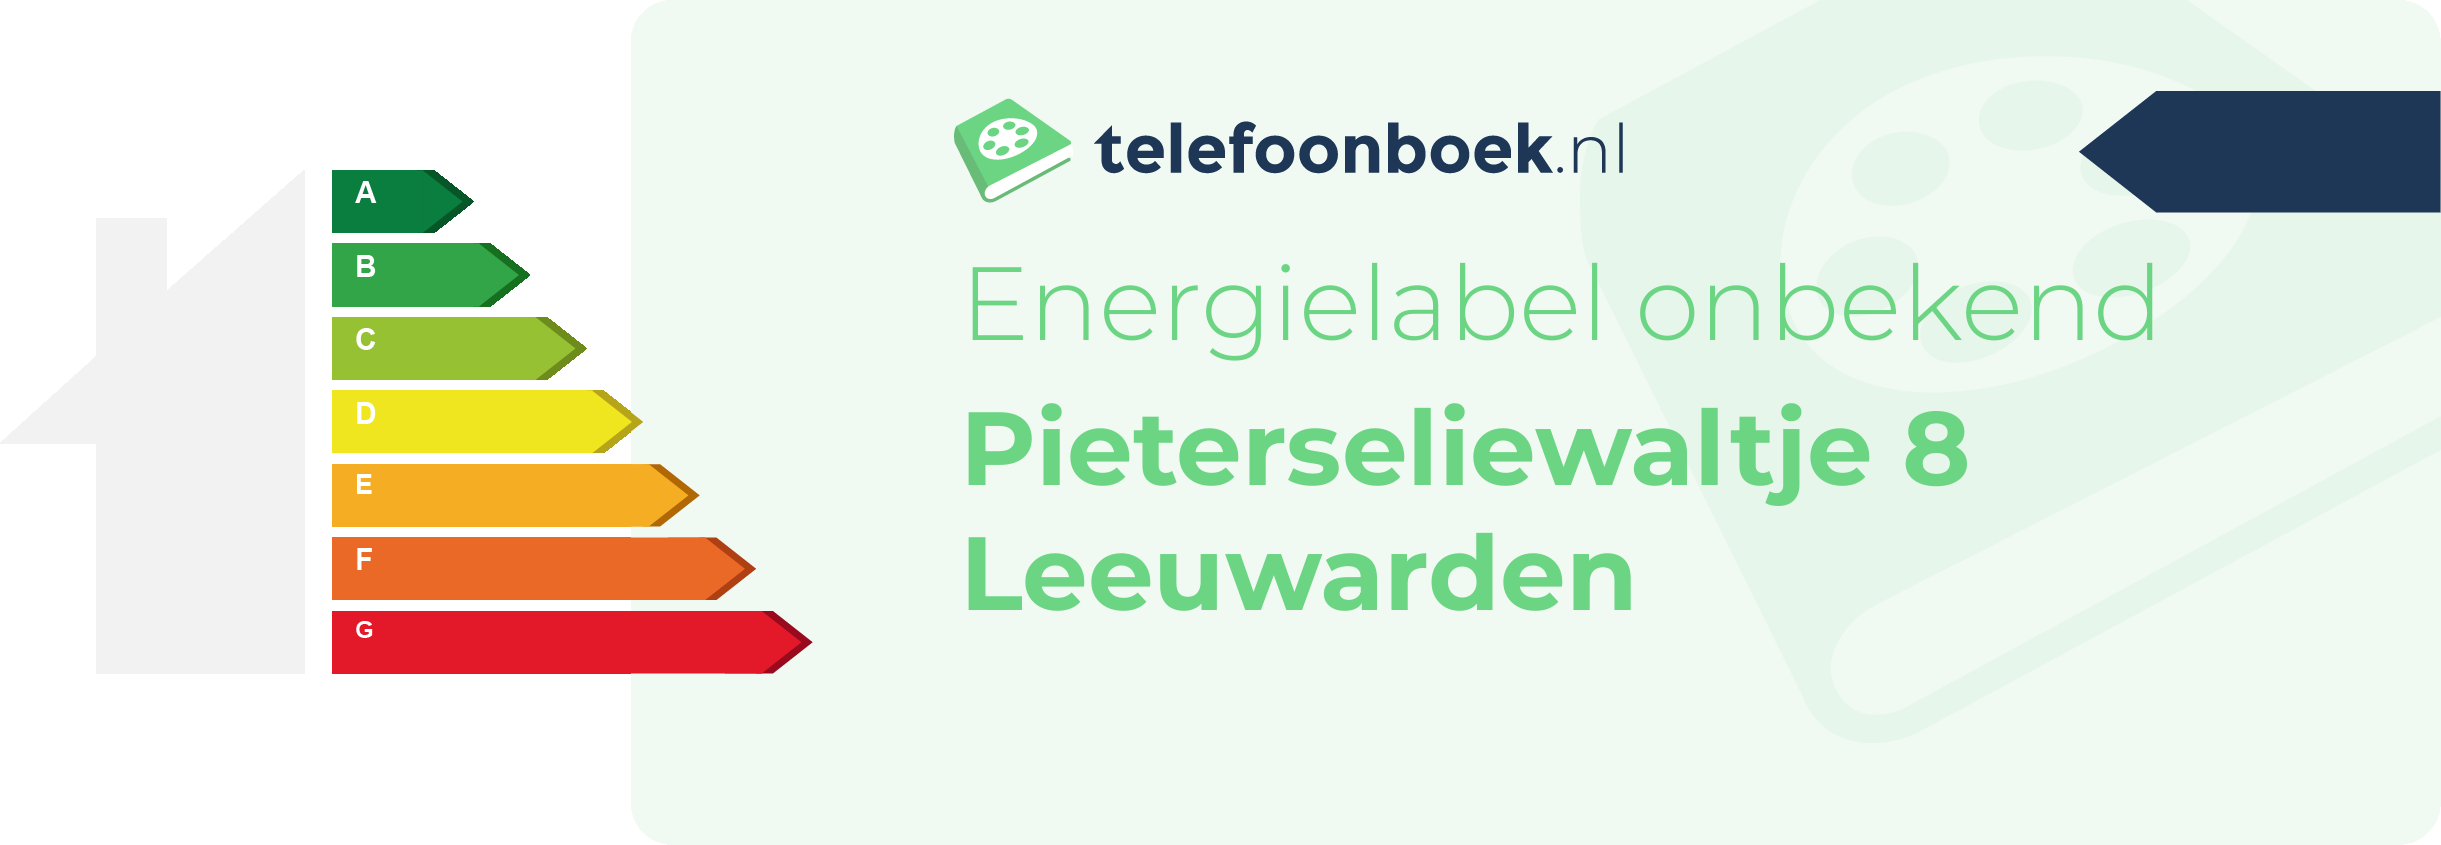 Energielabel Pieterseliewaltje 8 Leeuwarden